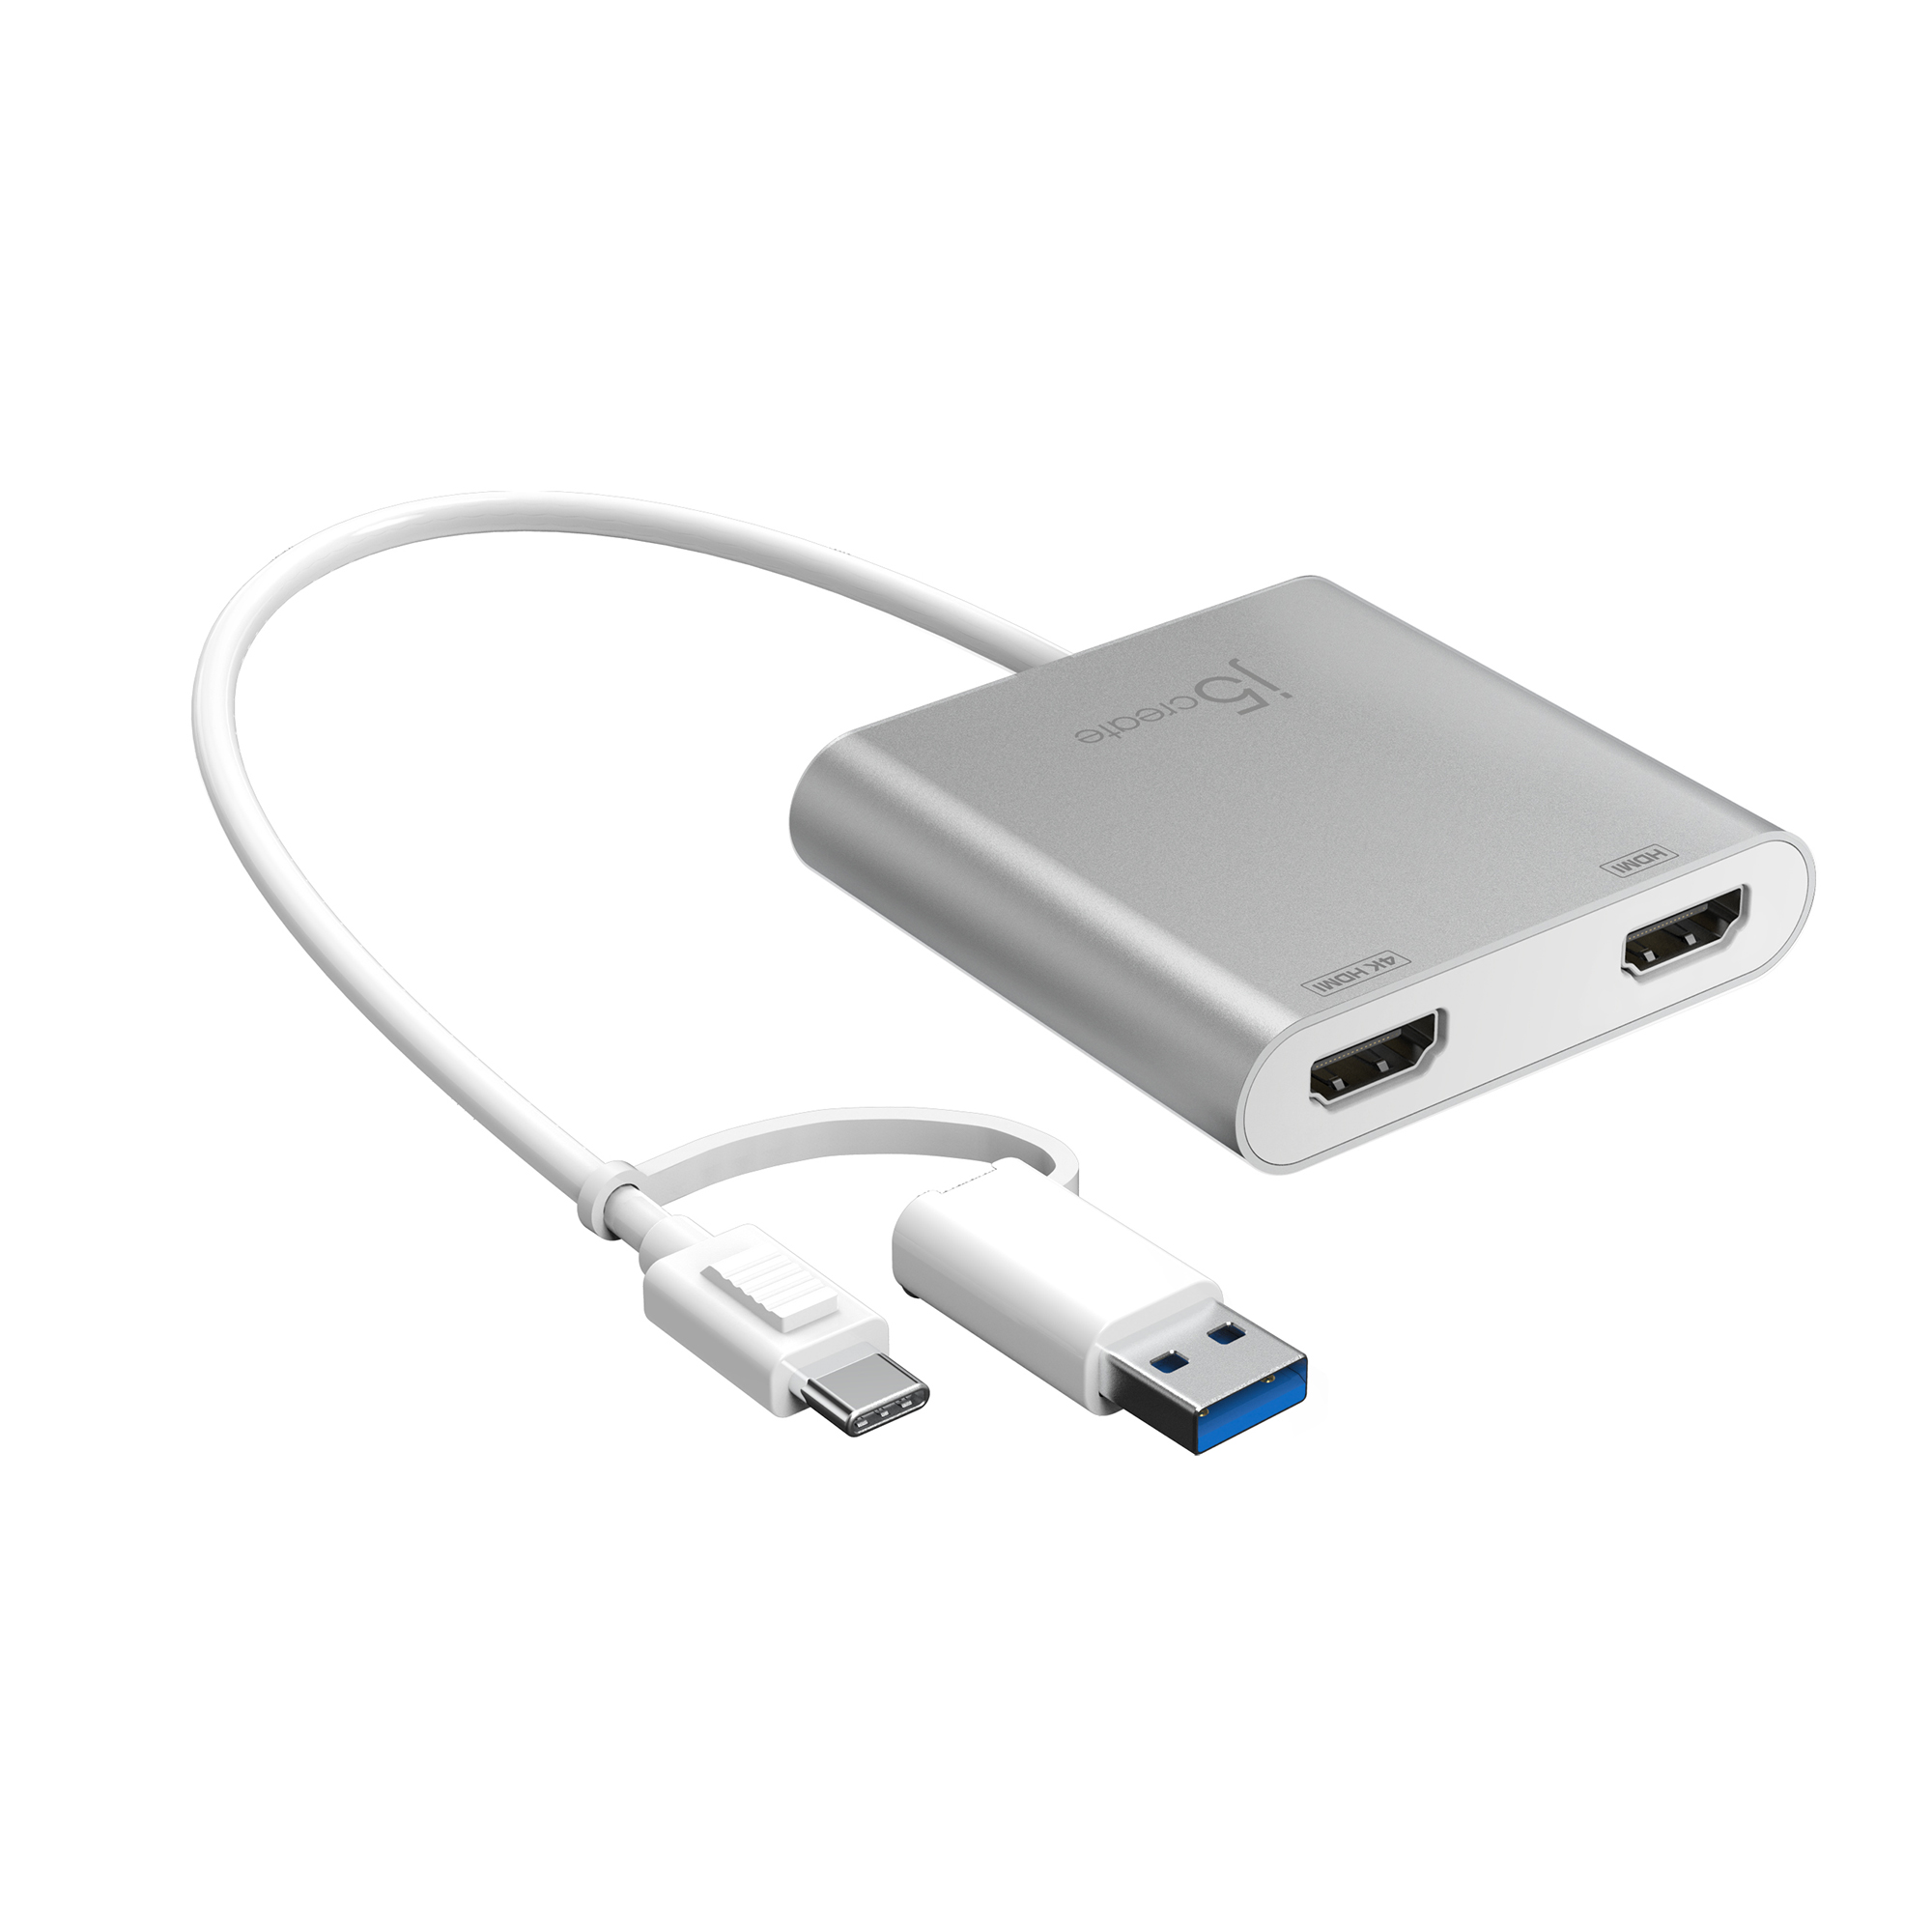 Silber Multi-Monitor Adapter, JCA365-N HDMI J5CREATE zu USB-C